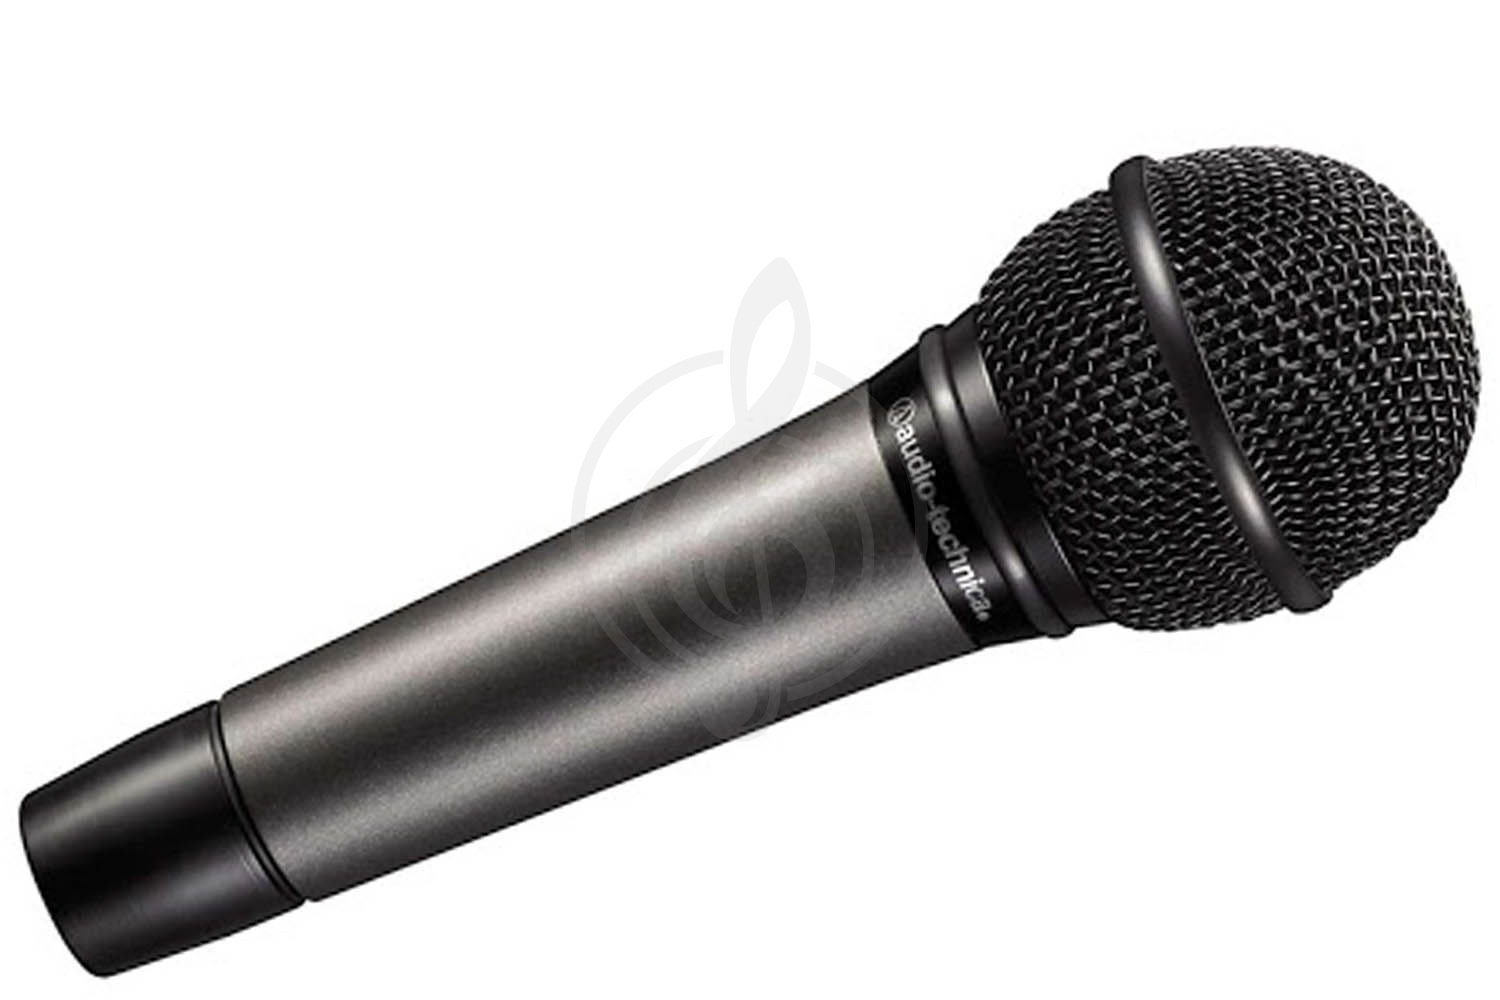 Динамический вокальный микрофон Динамические вокальные микрофоны AUDIO-TECHNICA Audio-Technica ATM510 - Микрофон вокальный динамический ATM510 - фото 1